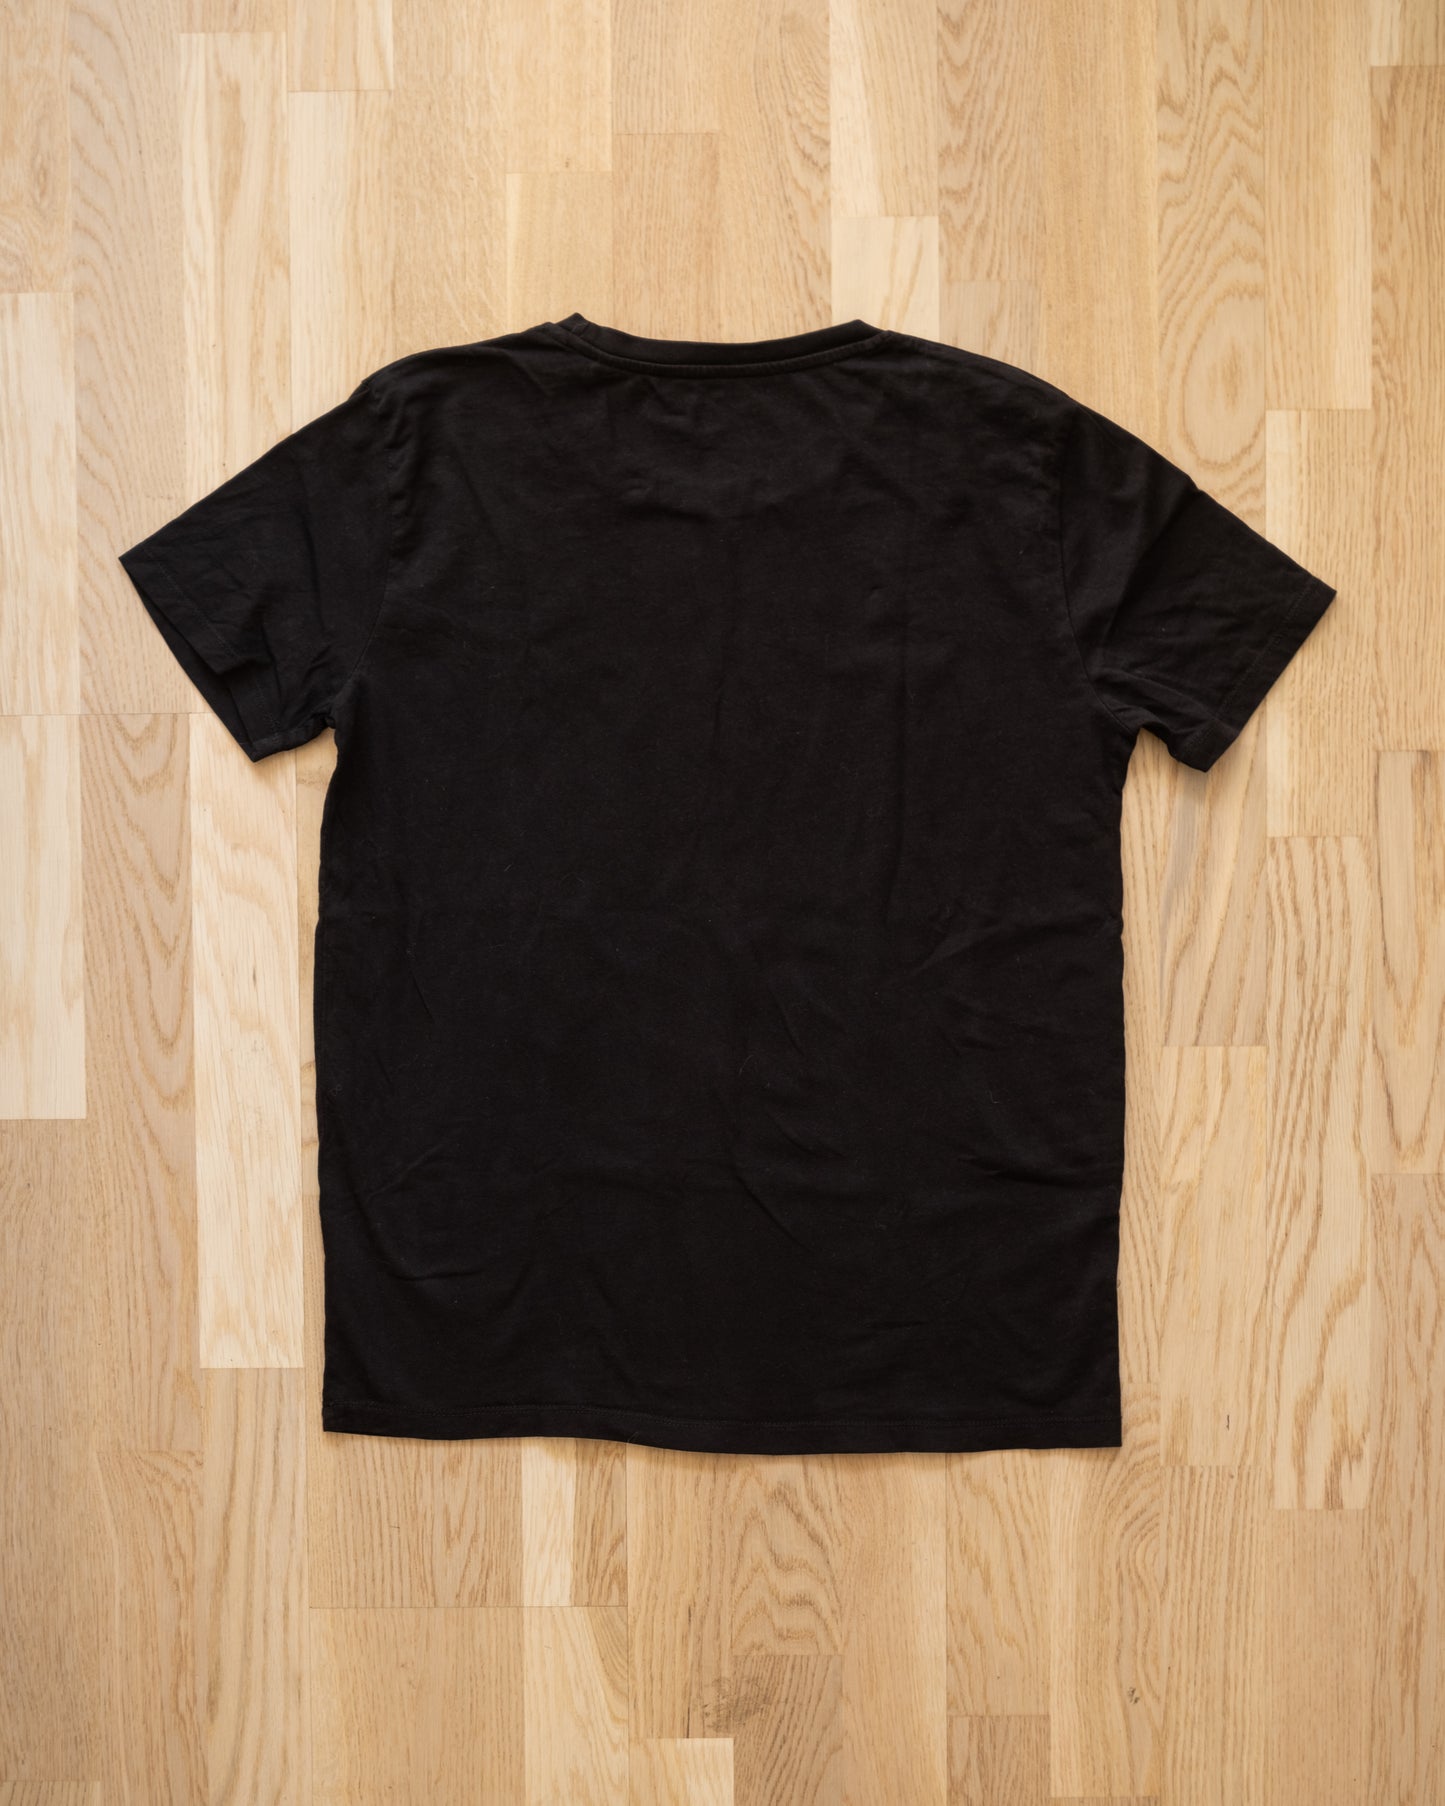 Watter Band T-Shirt Size S